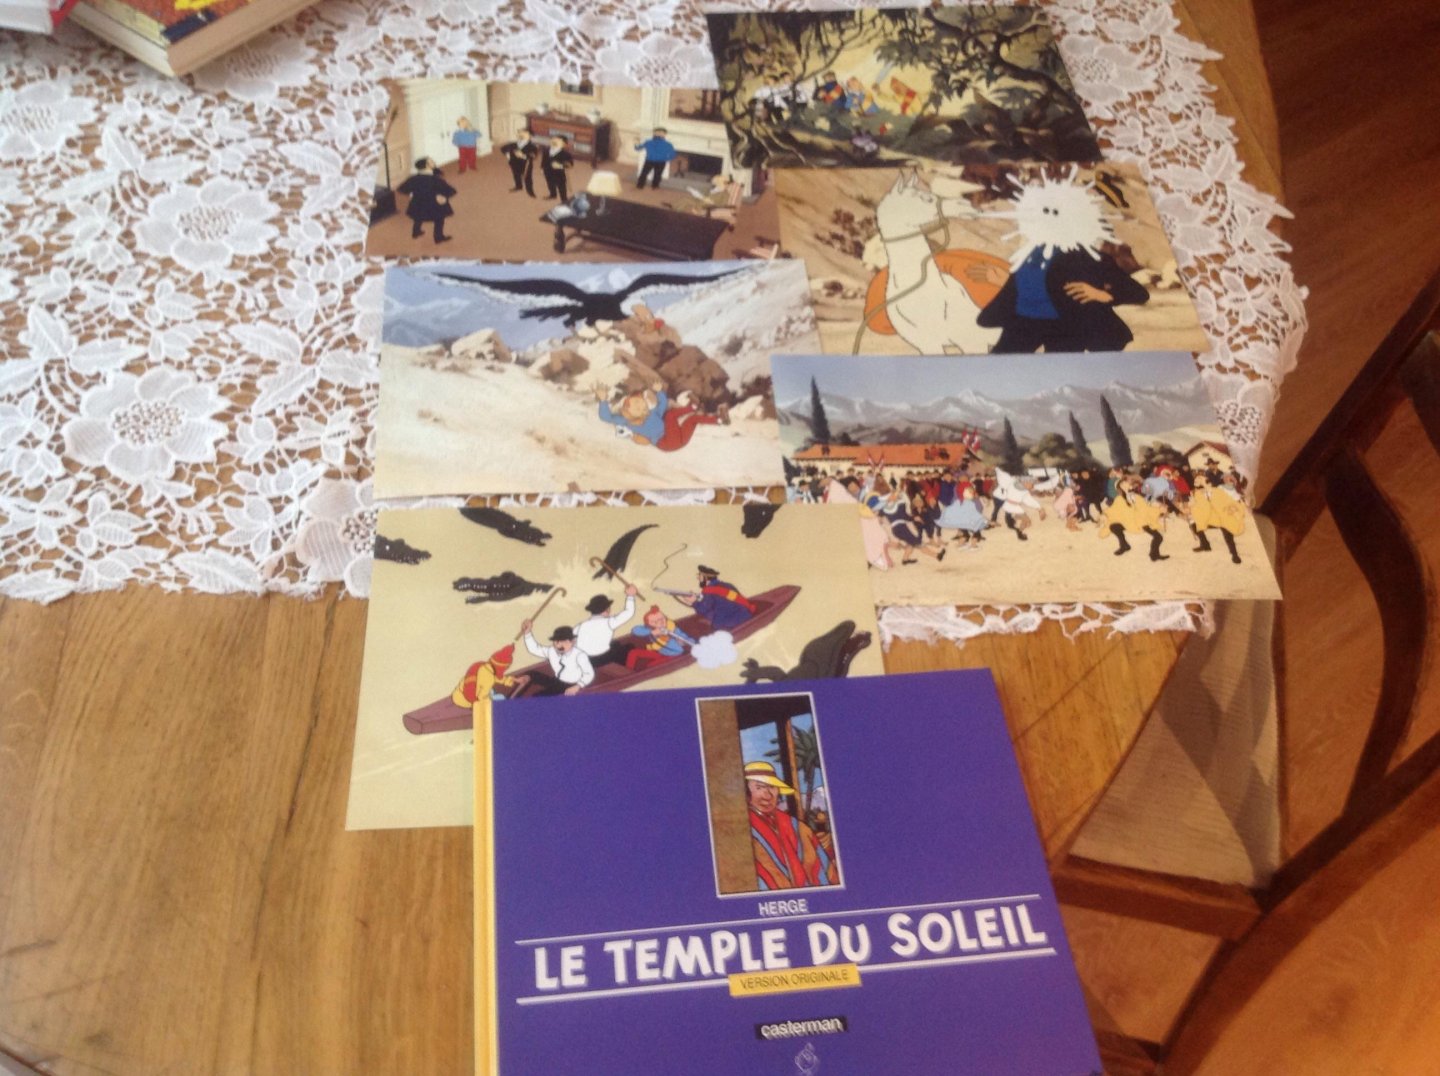 Hergë - Le Temple du Soleil version originale met extraatjes